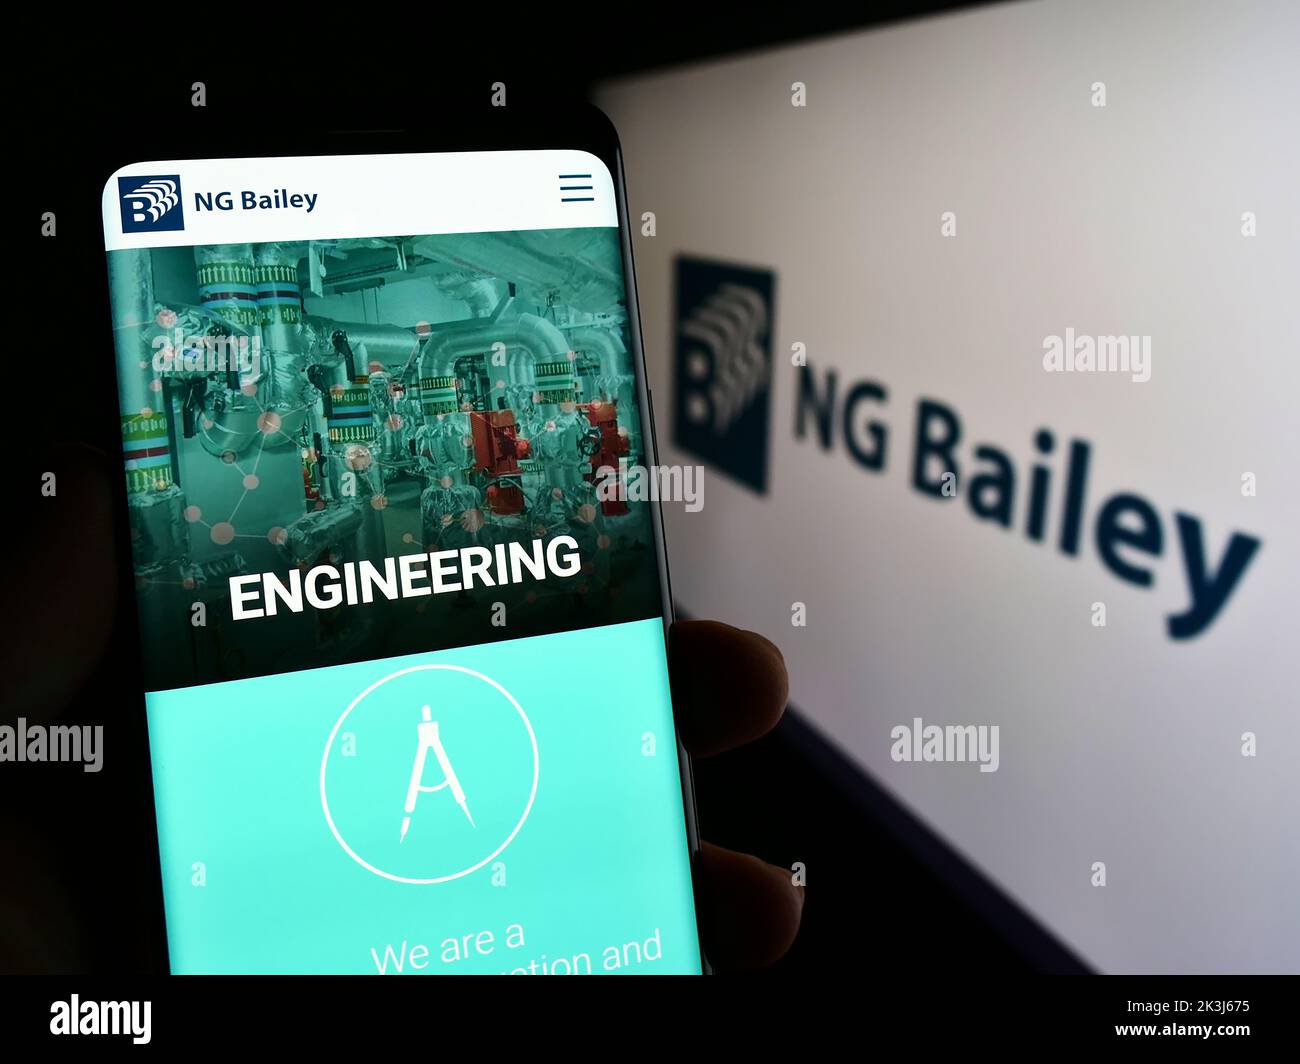 Persona que sostiene el teléfono celular con la página web de la compañía de ingeniería NG Bailey Group Limited en la pantalla delante del logotipo. Enfoque en el centro de la pantalla del teléfono. Foto de stock